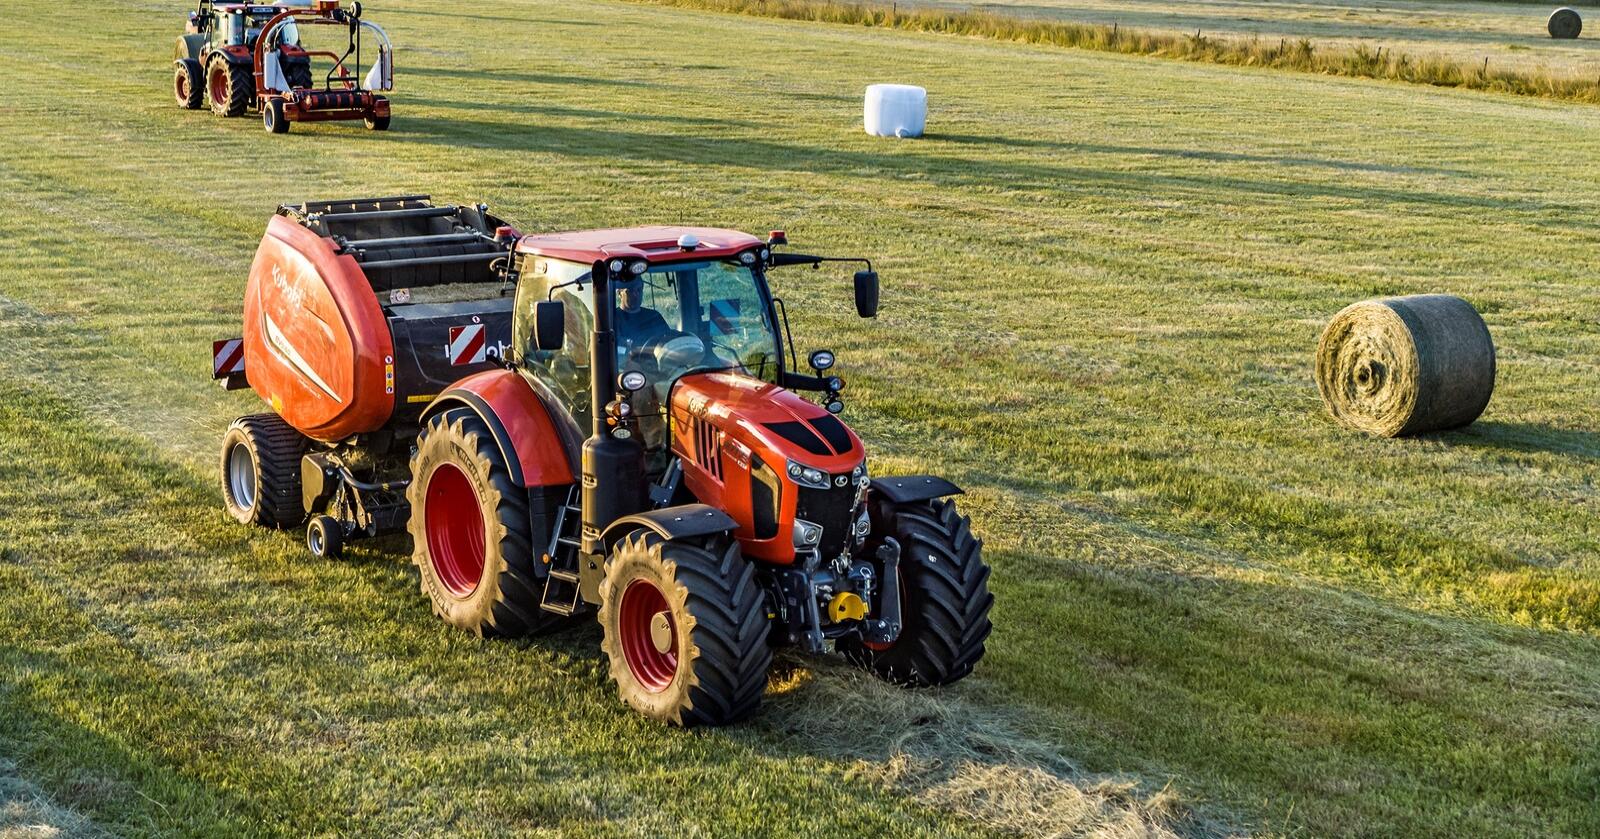 Teknologi: Traktorprodusenten Kubota kjøper selskapet AgJunction, og skaffer seg kontroll over enda mer teknologi innen landbrukssektoren.